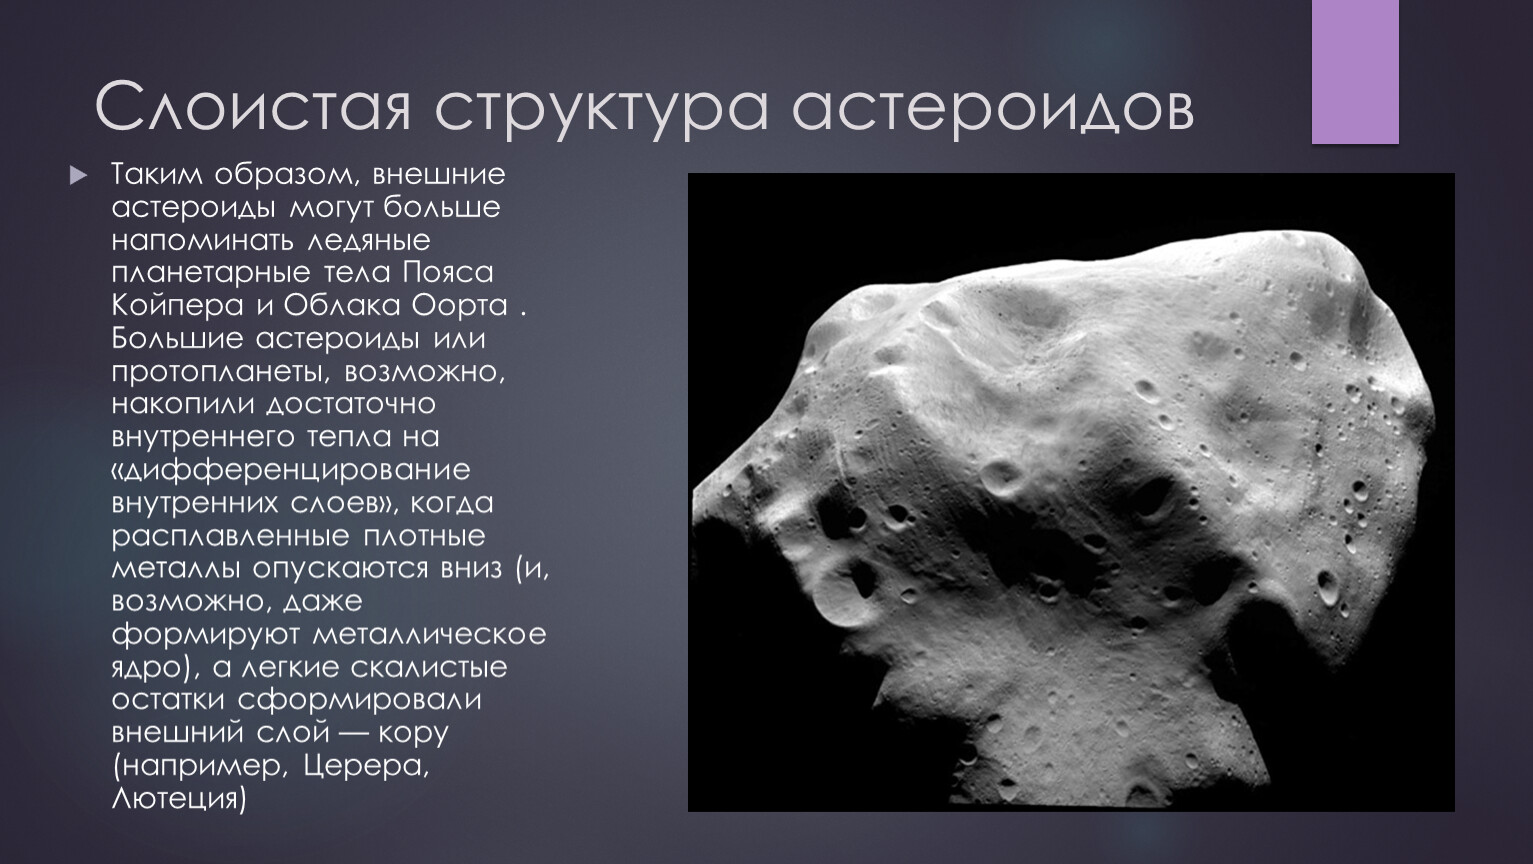 Название группы астероидов. Структура астероидов. Химический состав астероидов. Из чего состоят астероиды. Астероиды строение и состав.